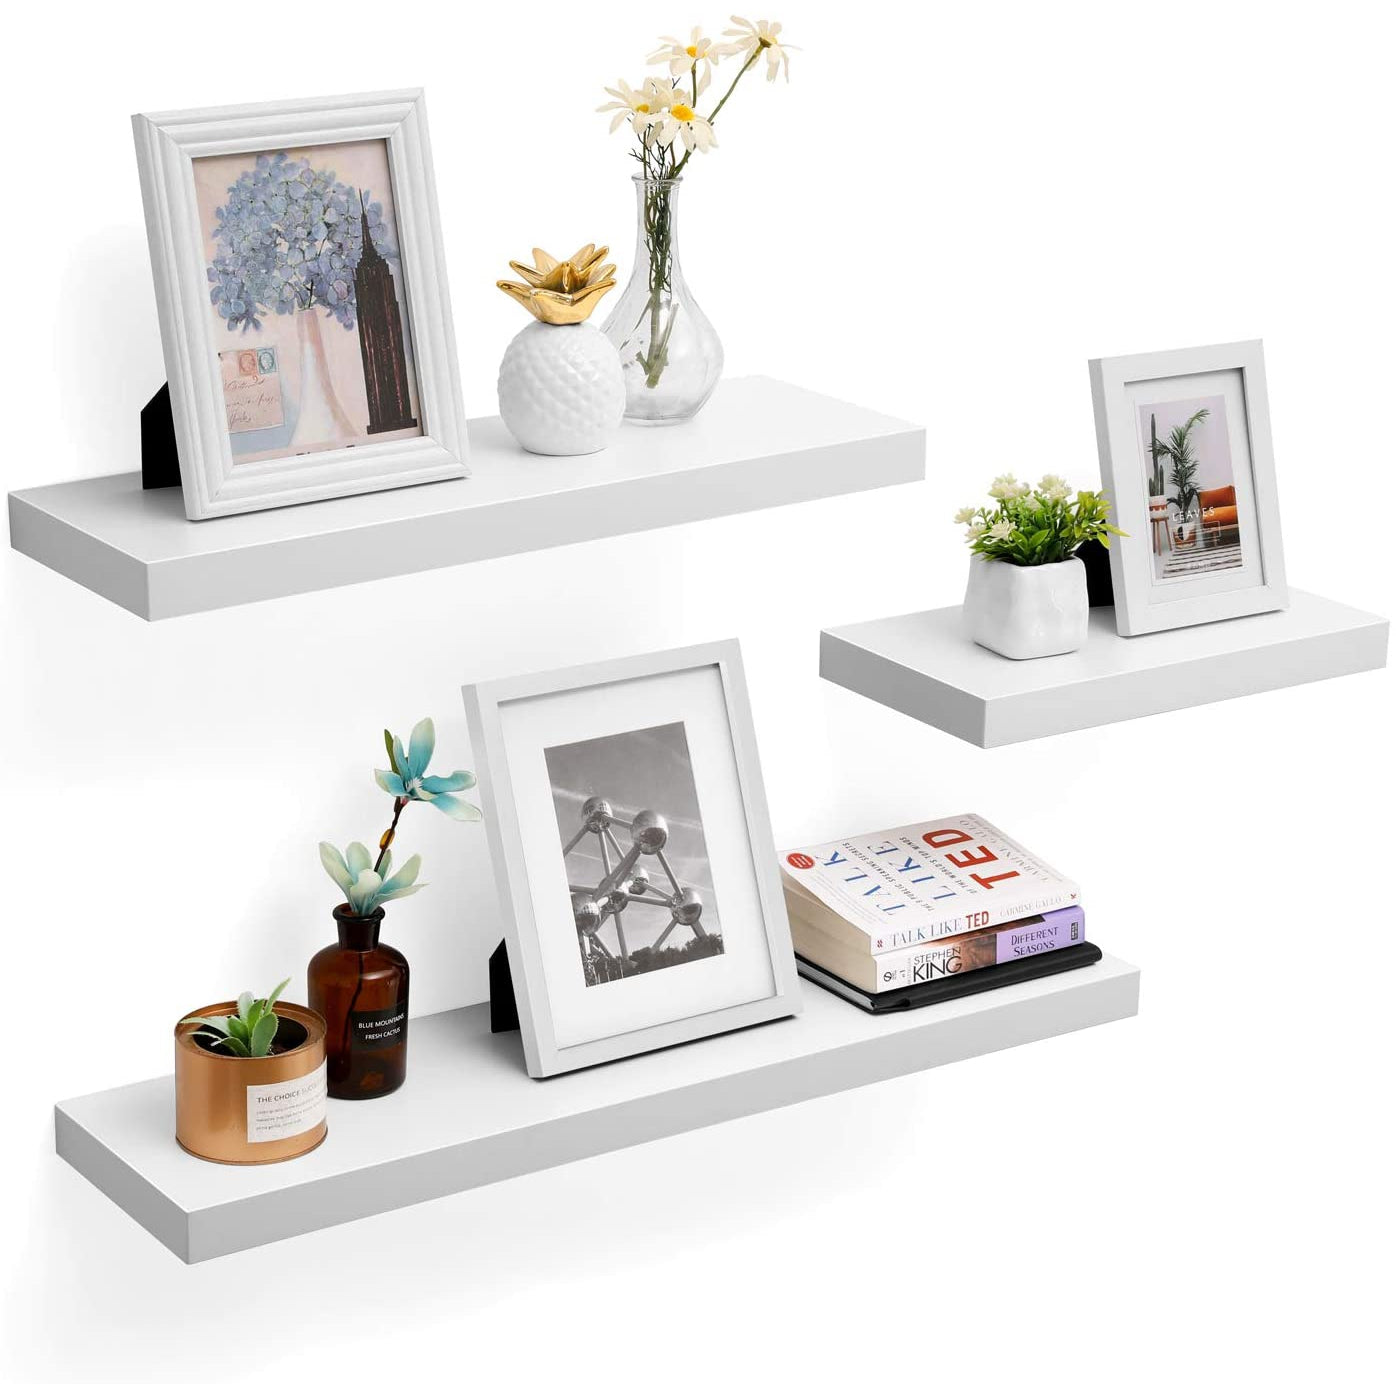 Nancy's Wall Shelf - Floating shelf - Hanging shelf for photos, decoration - 80 x 20 x 3.8 cm - White